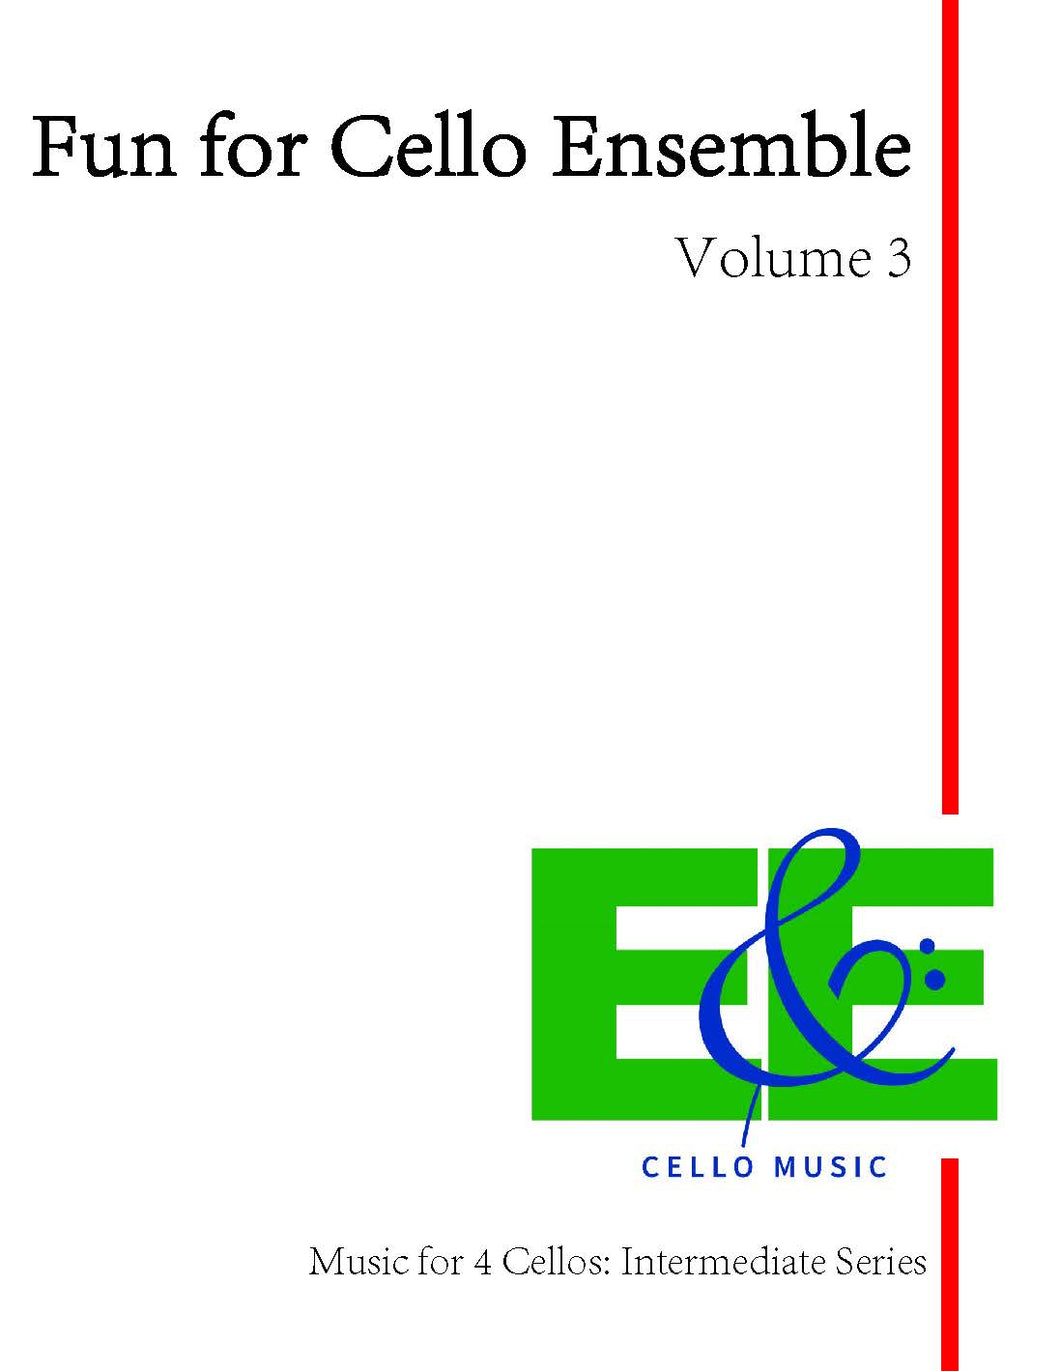 Fun for Cello Ensemble Vol. 3<br>Music for 4 Cellos<br>Intermediate Series